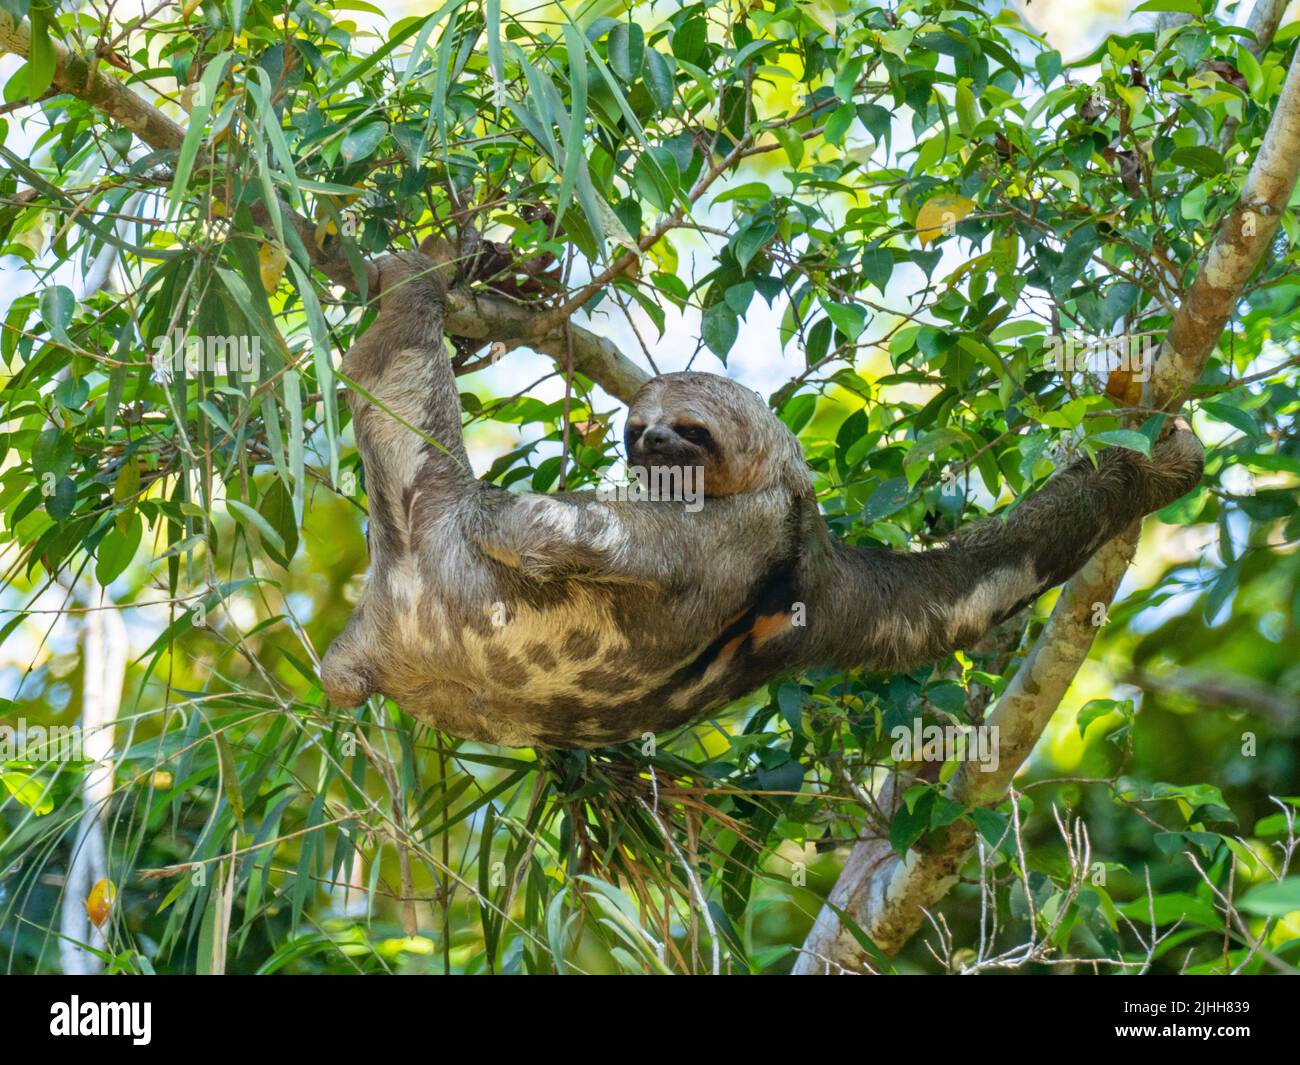 Perezoso de tres dedos de garganta parda, Bradypus variegatus, colgado en un árbol a lo largo del río Amazonas del Perú Foto de stock